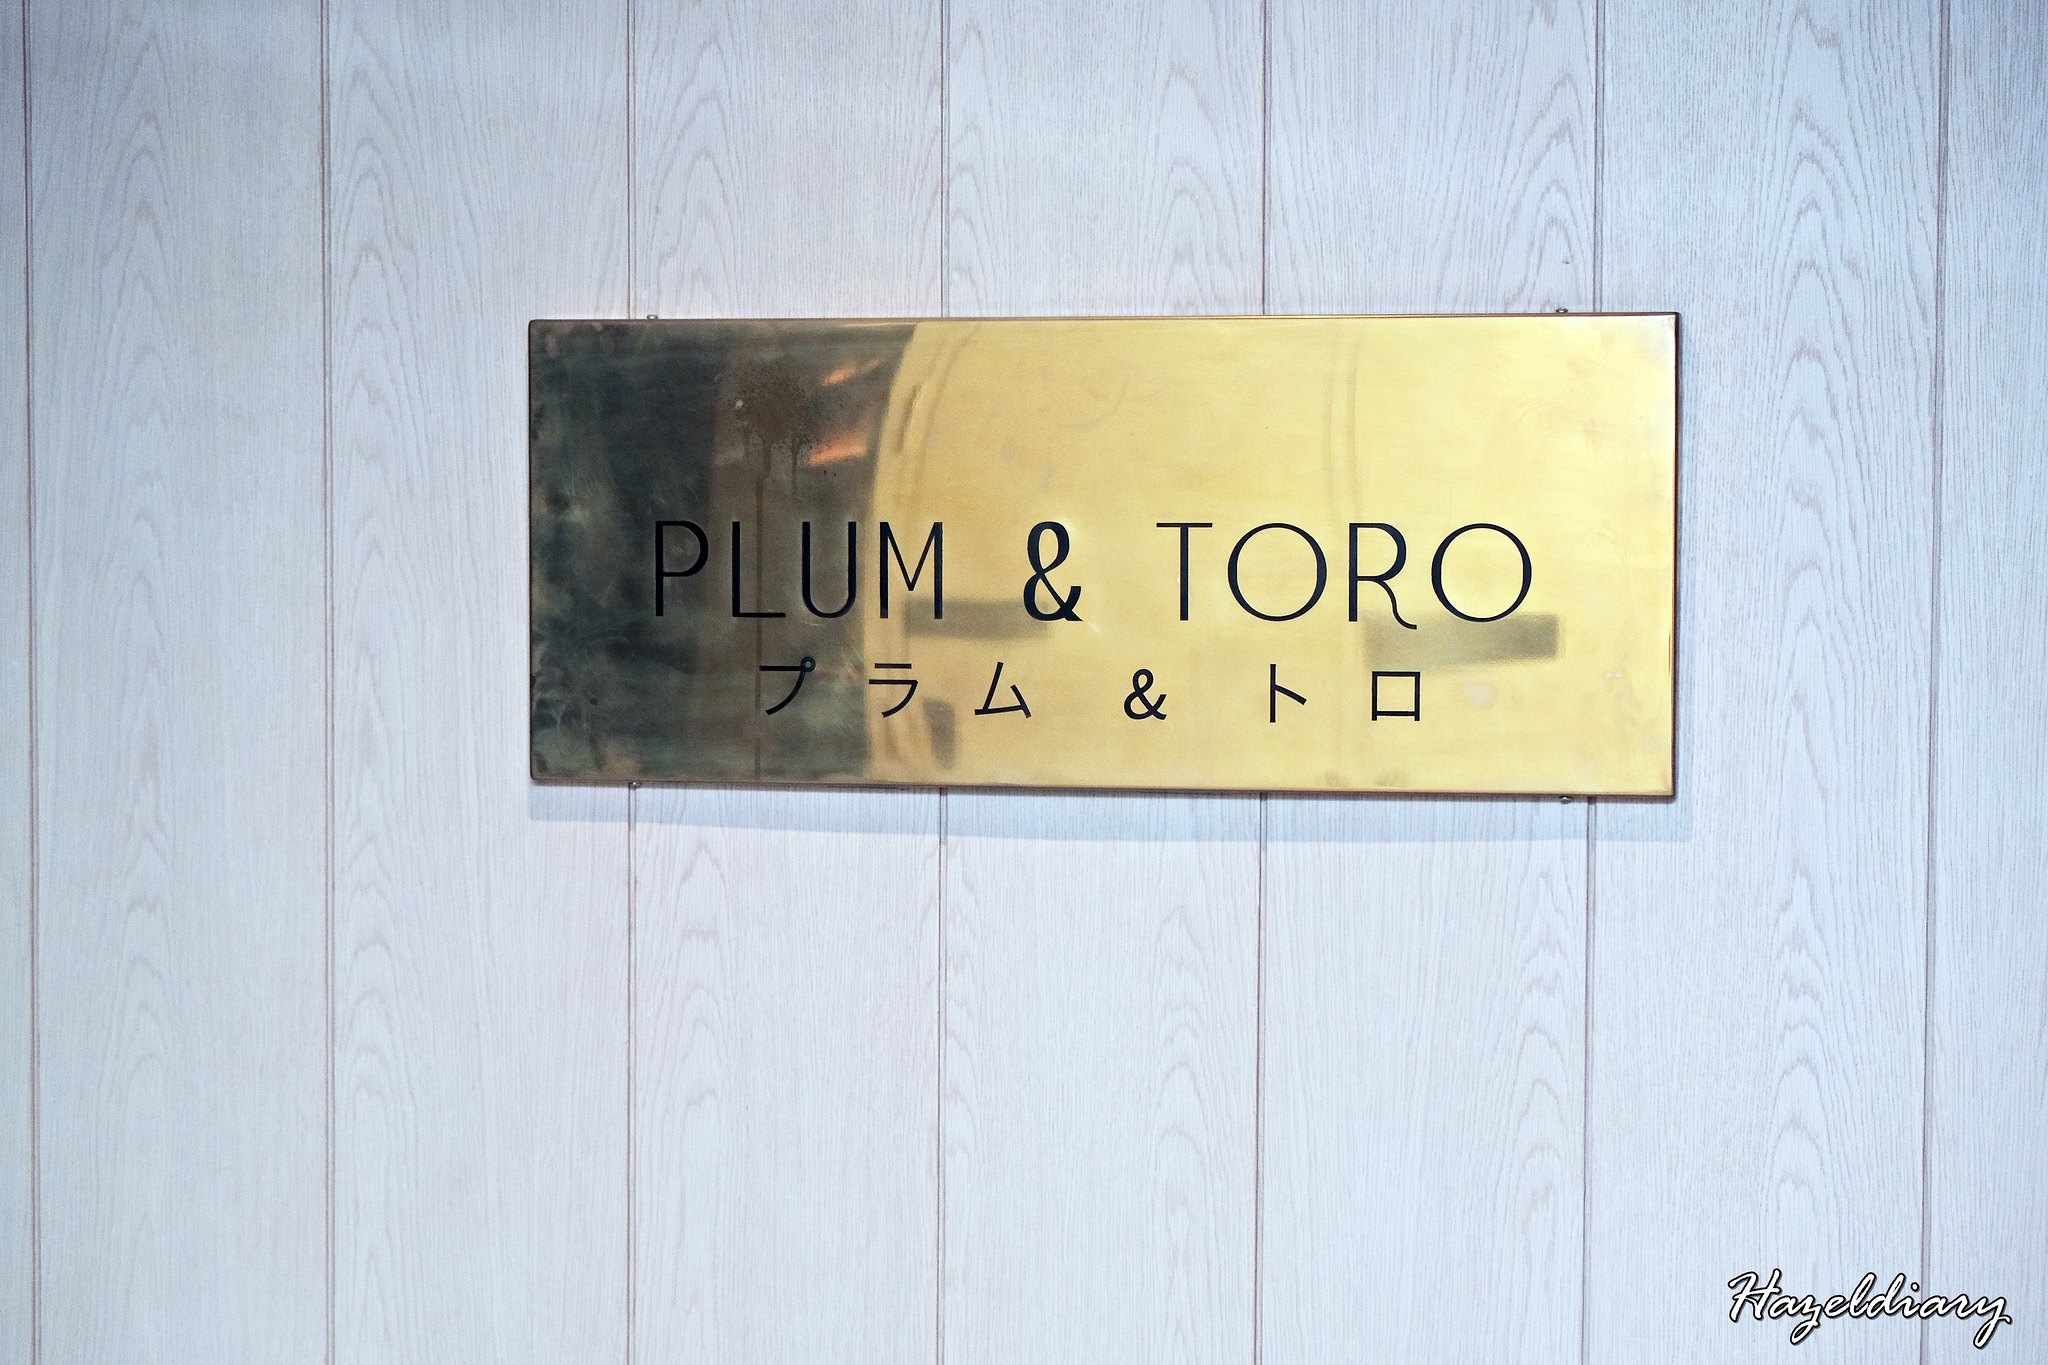 Plum & Toro